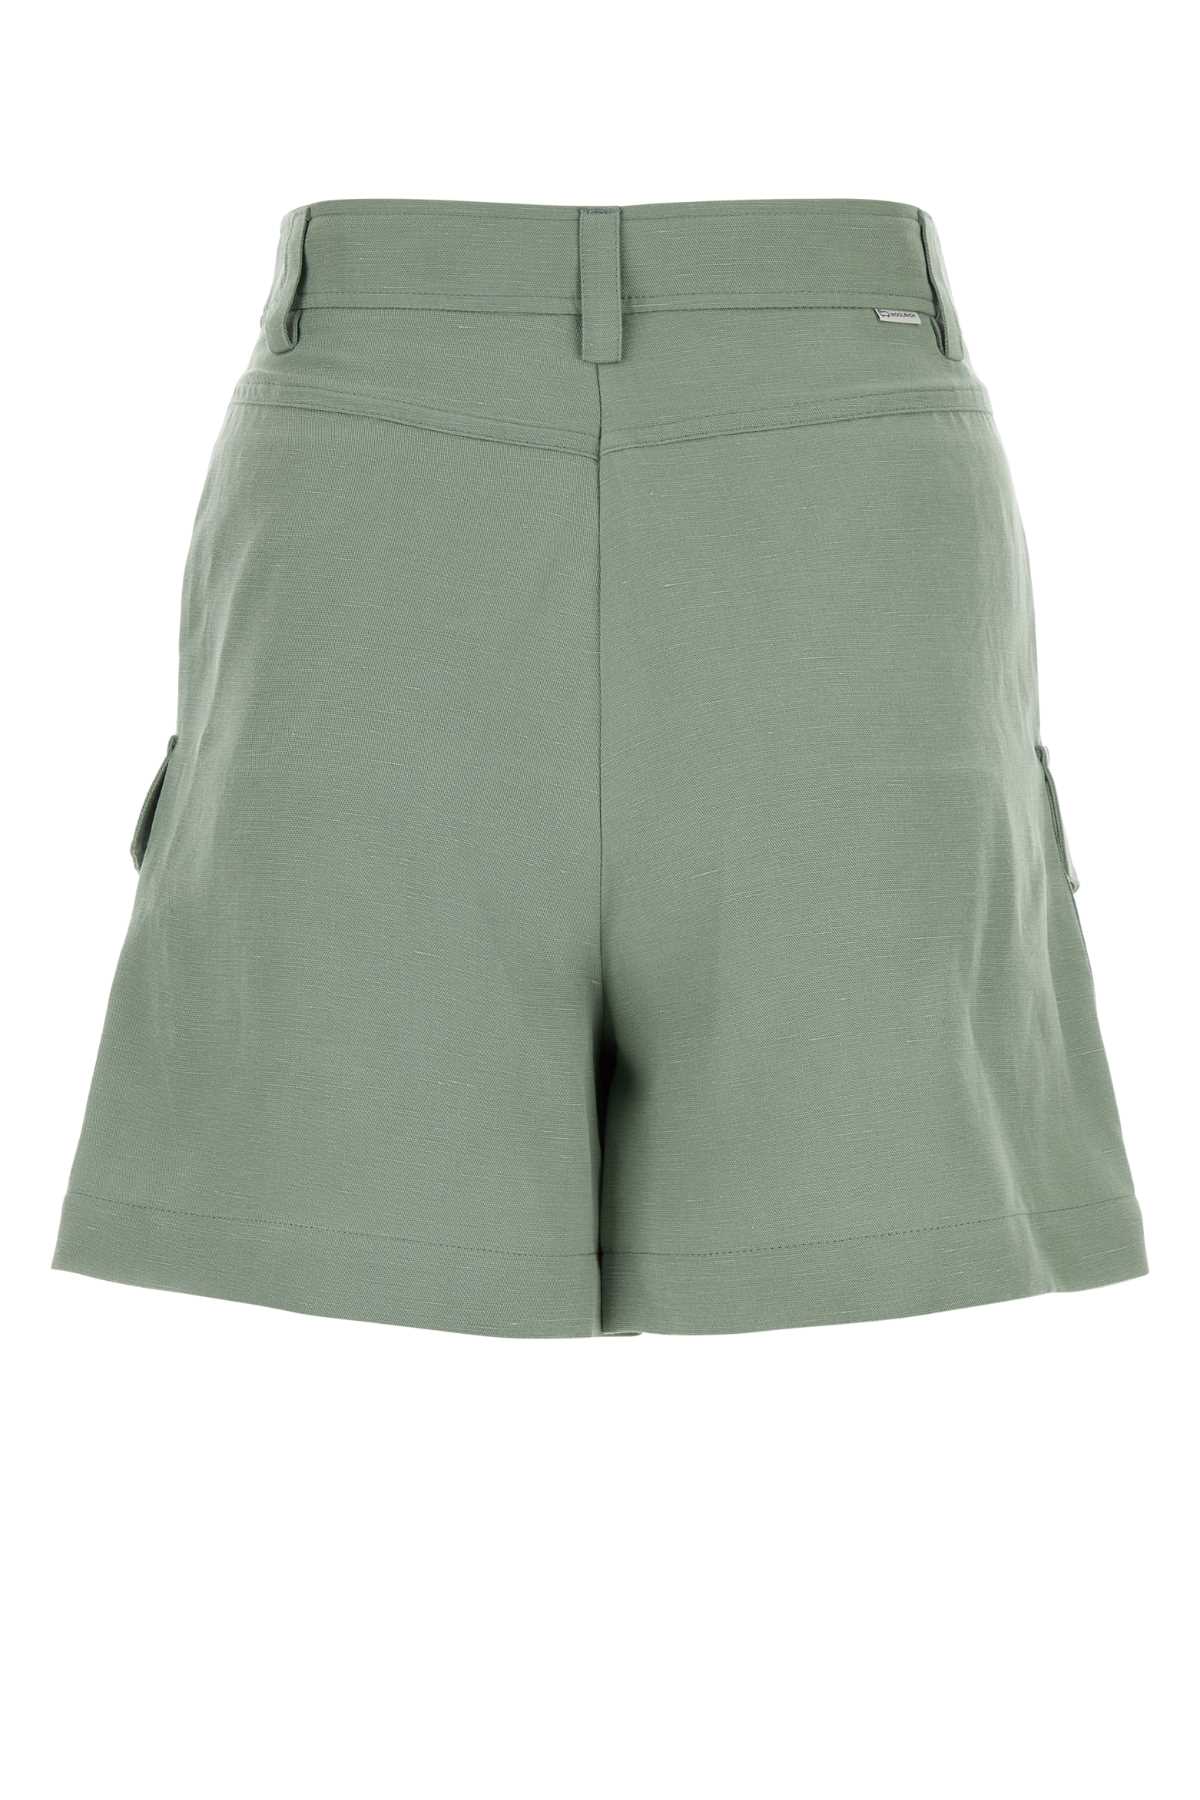 Woolrich Sage Green Viscose Blend Shorts